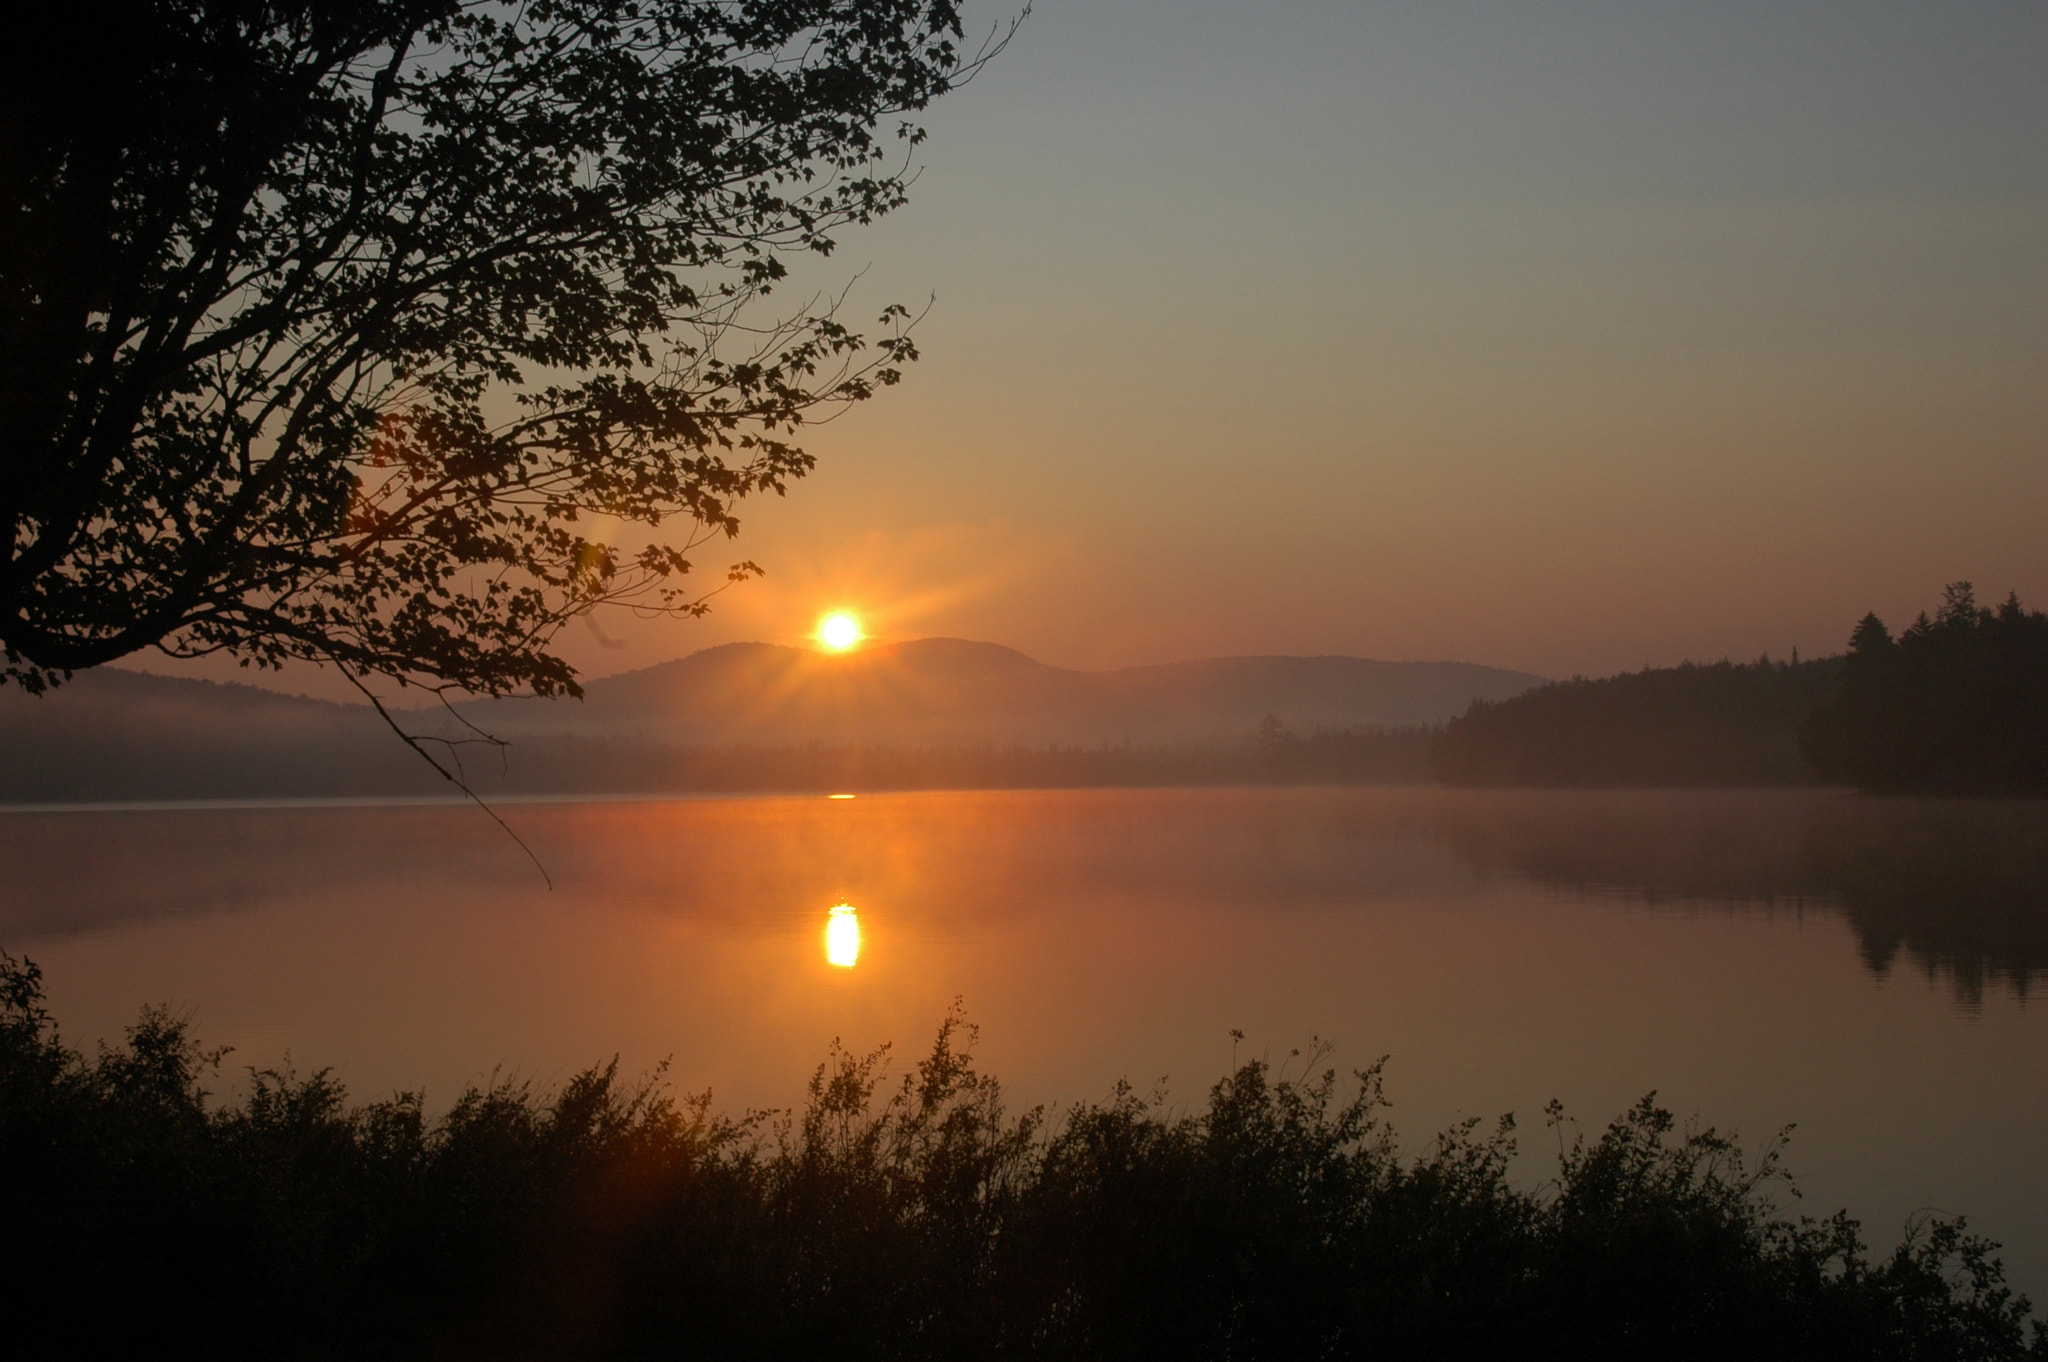 Nikon D70s + AF Zoom-Nikkor 24-120mm f/3.5-5.6D IF sample photo. Sunrise on the lake photography